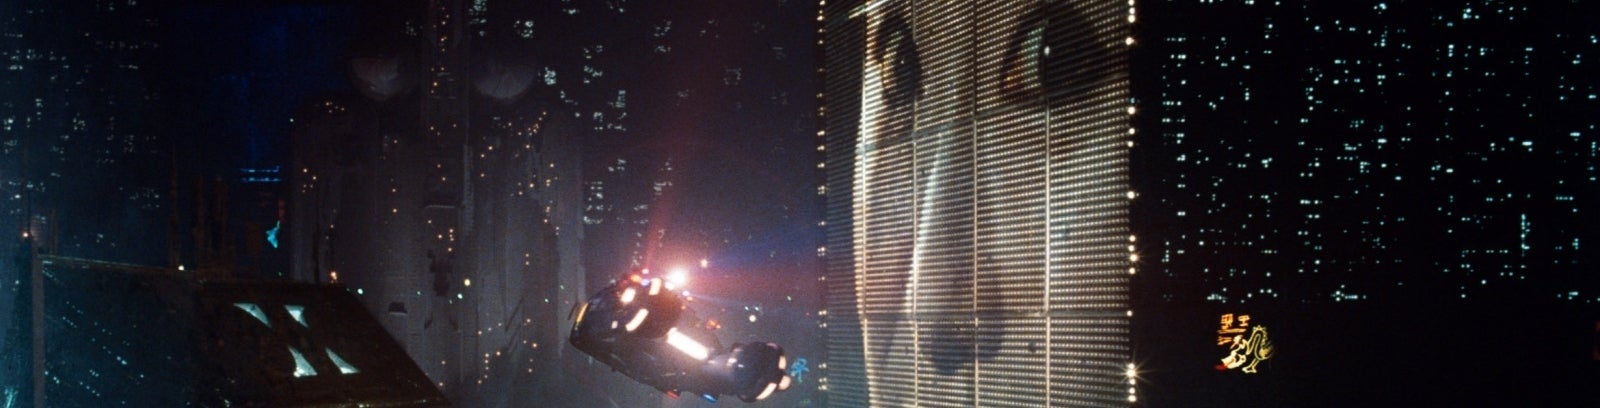 Obrazki dla Niezapomniany Blade Runner